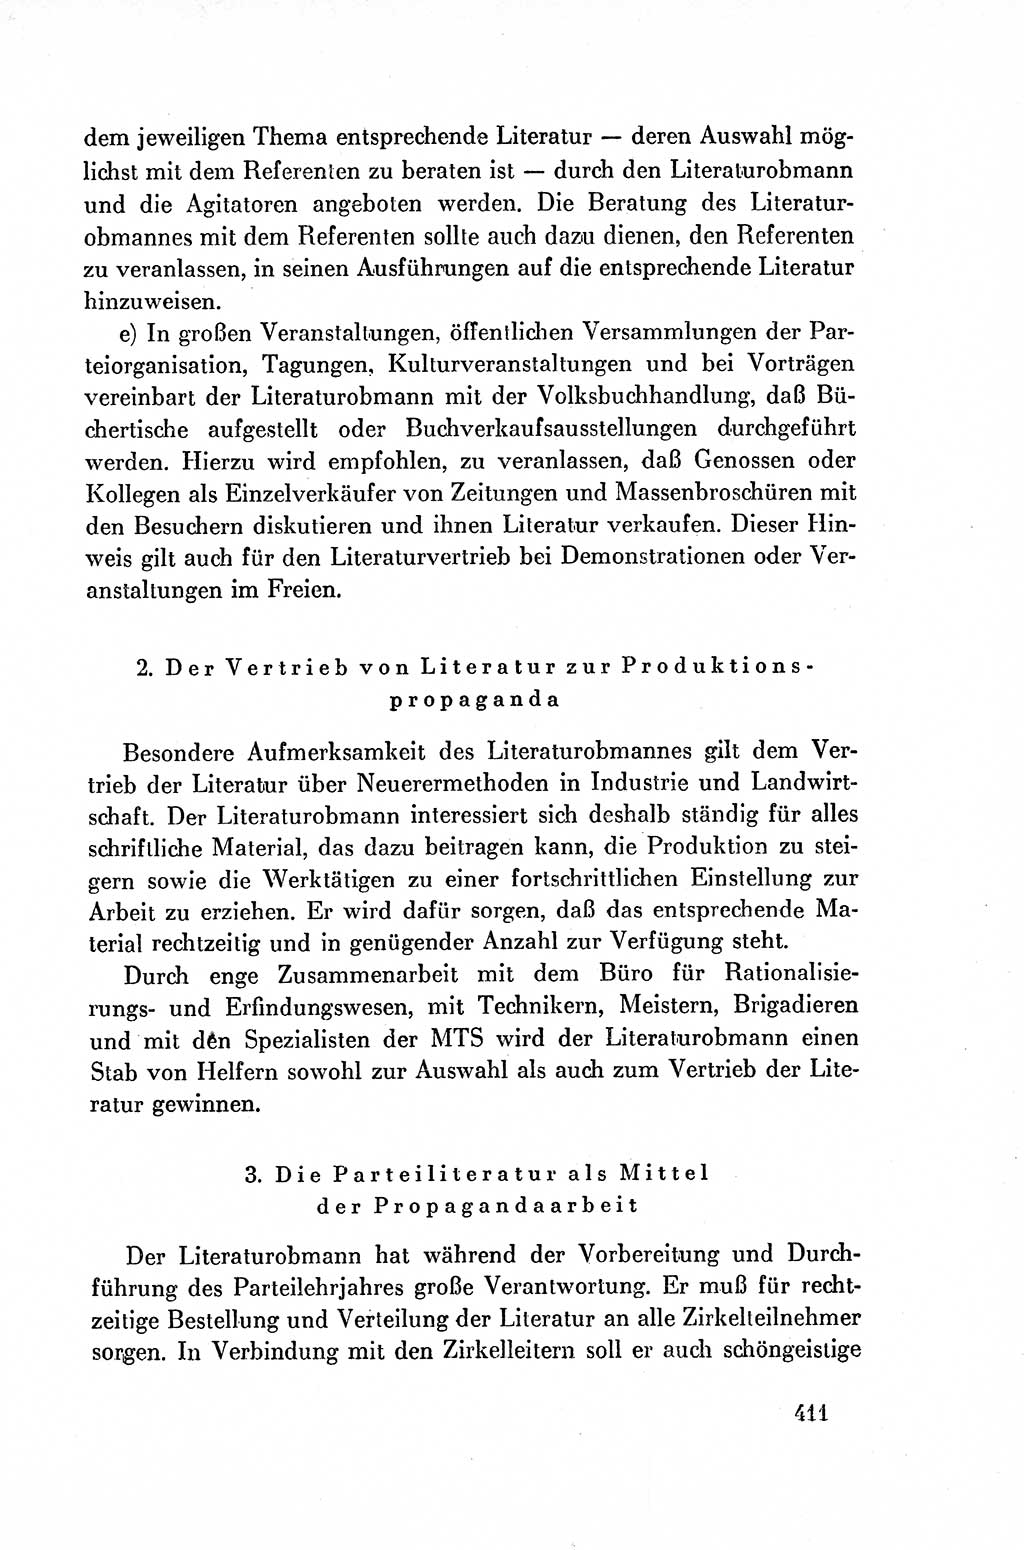 Dokumente der Sozialistischen Einheitspartei Deutschlands (SED) [Deutsche Demokratische Republik (DDR)] 1954-1955, Seite 411 (Dok. SED DDR 1954-1955, S. 411)